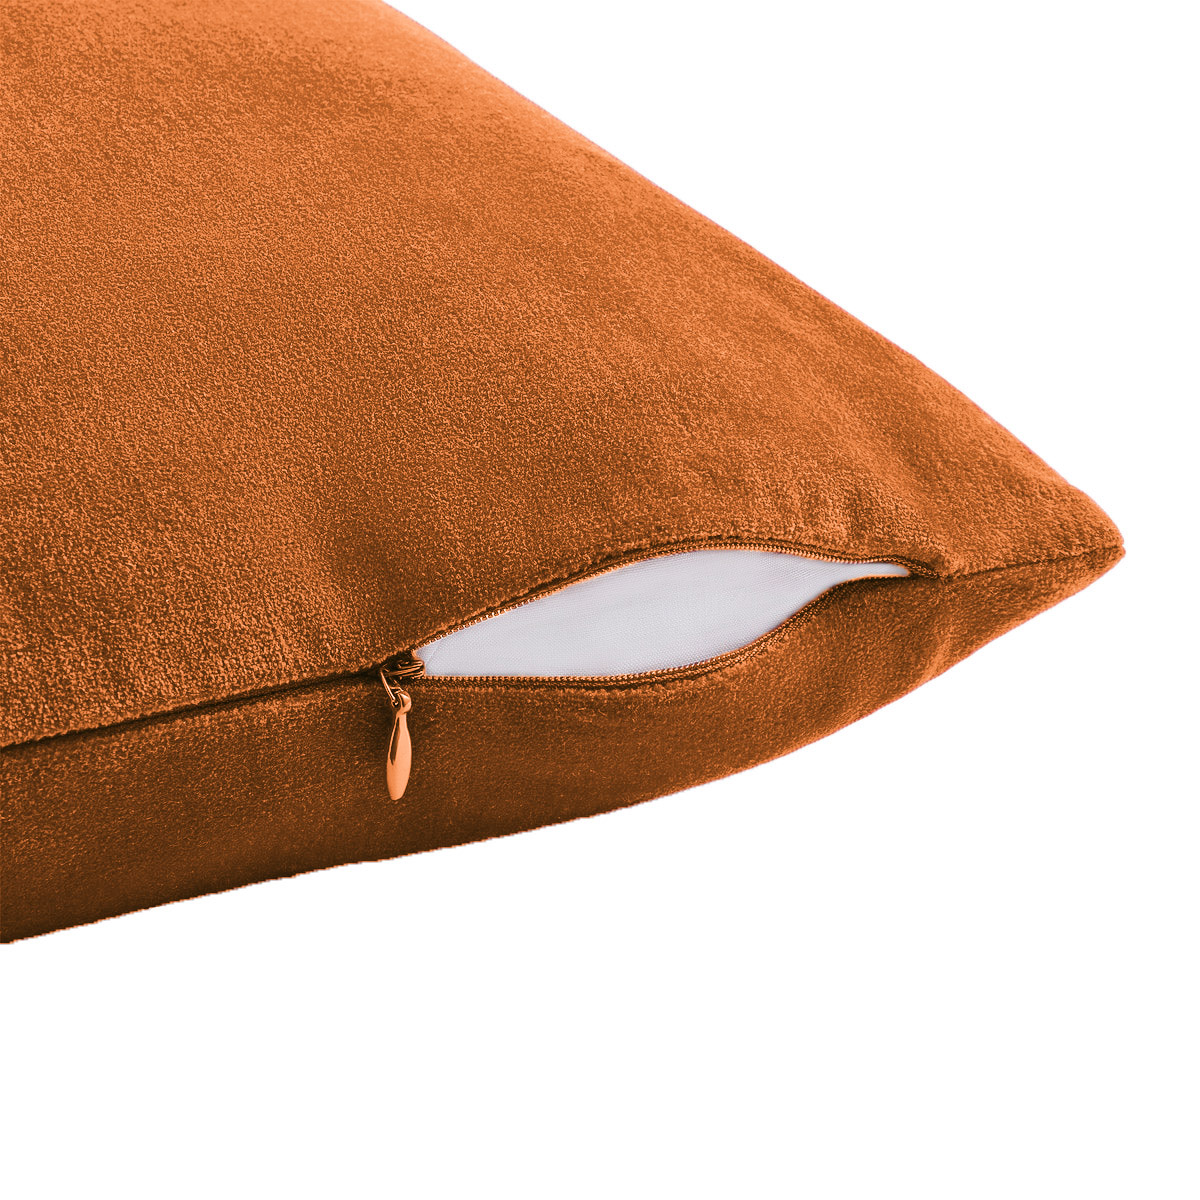 Acomoda Textil – Puff Redondo con Relleno para Asiento y Reposapiés  Acolchado. Sillón Relax Decorativo con Asa Transportable 50x50x30 cm.  (Gris)